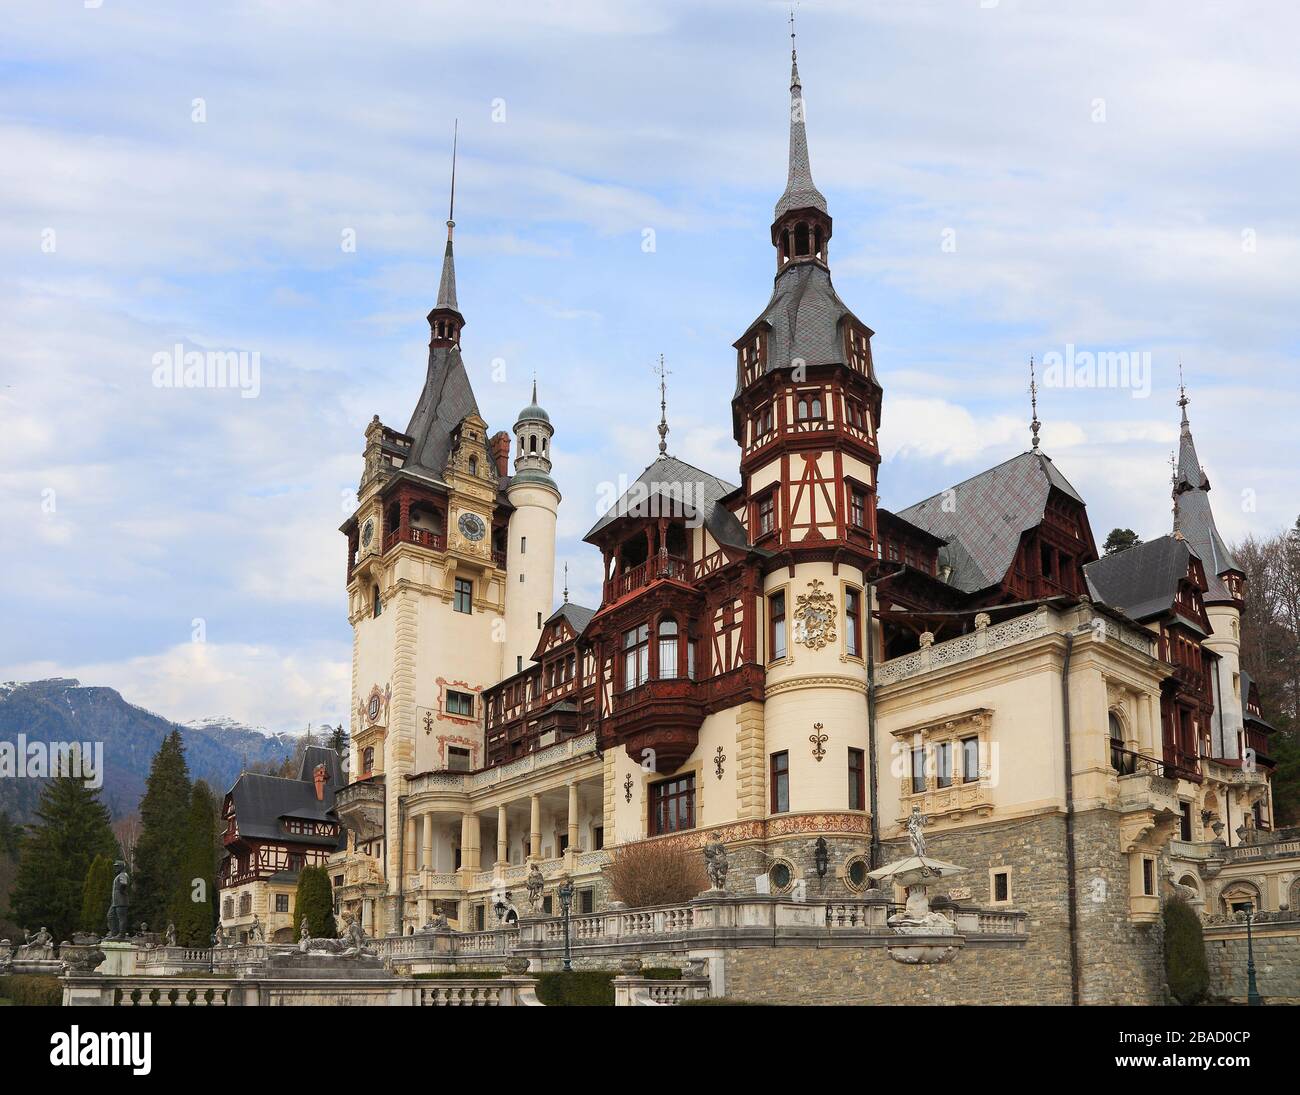 Célèbre château de Peles et jardin ornemental en Roumanie, site touristique des montagnes de Carpates en Europe Banque D'Images